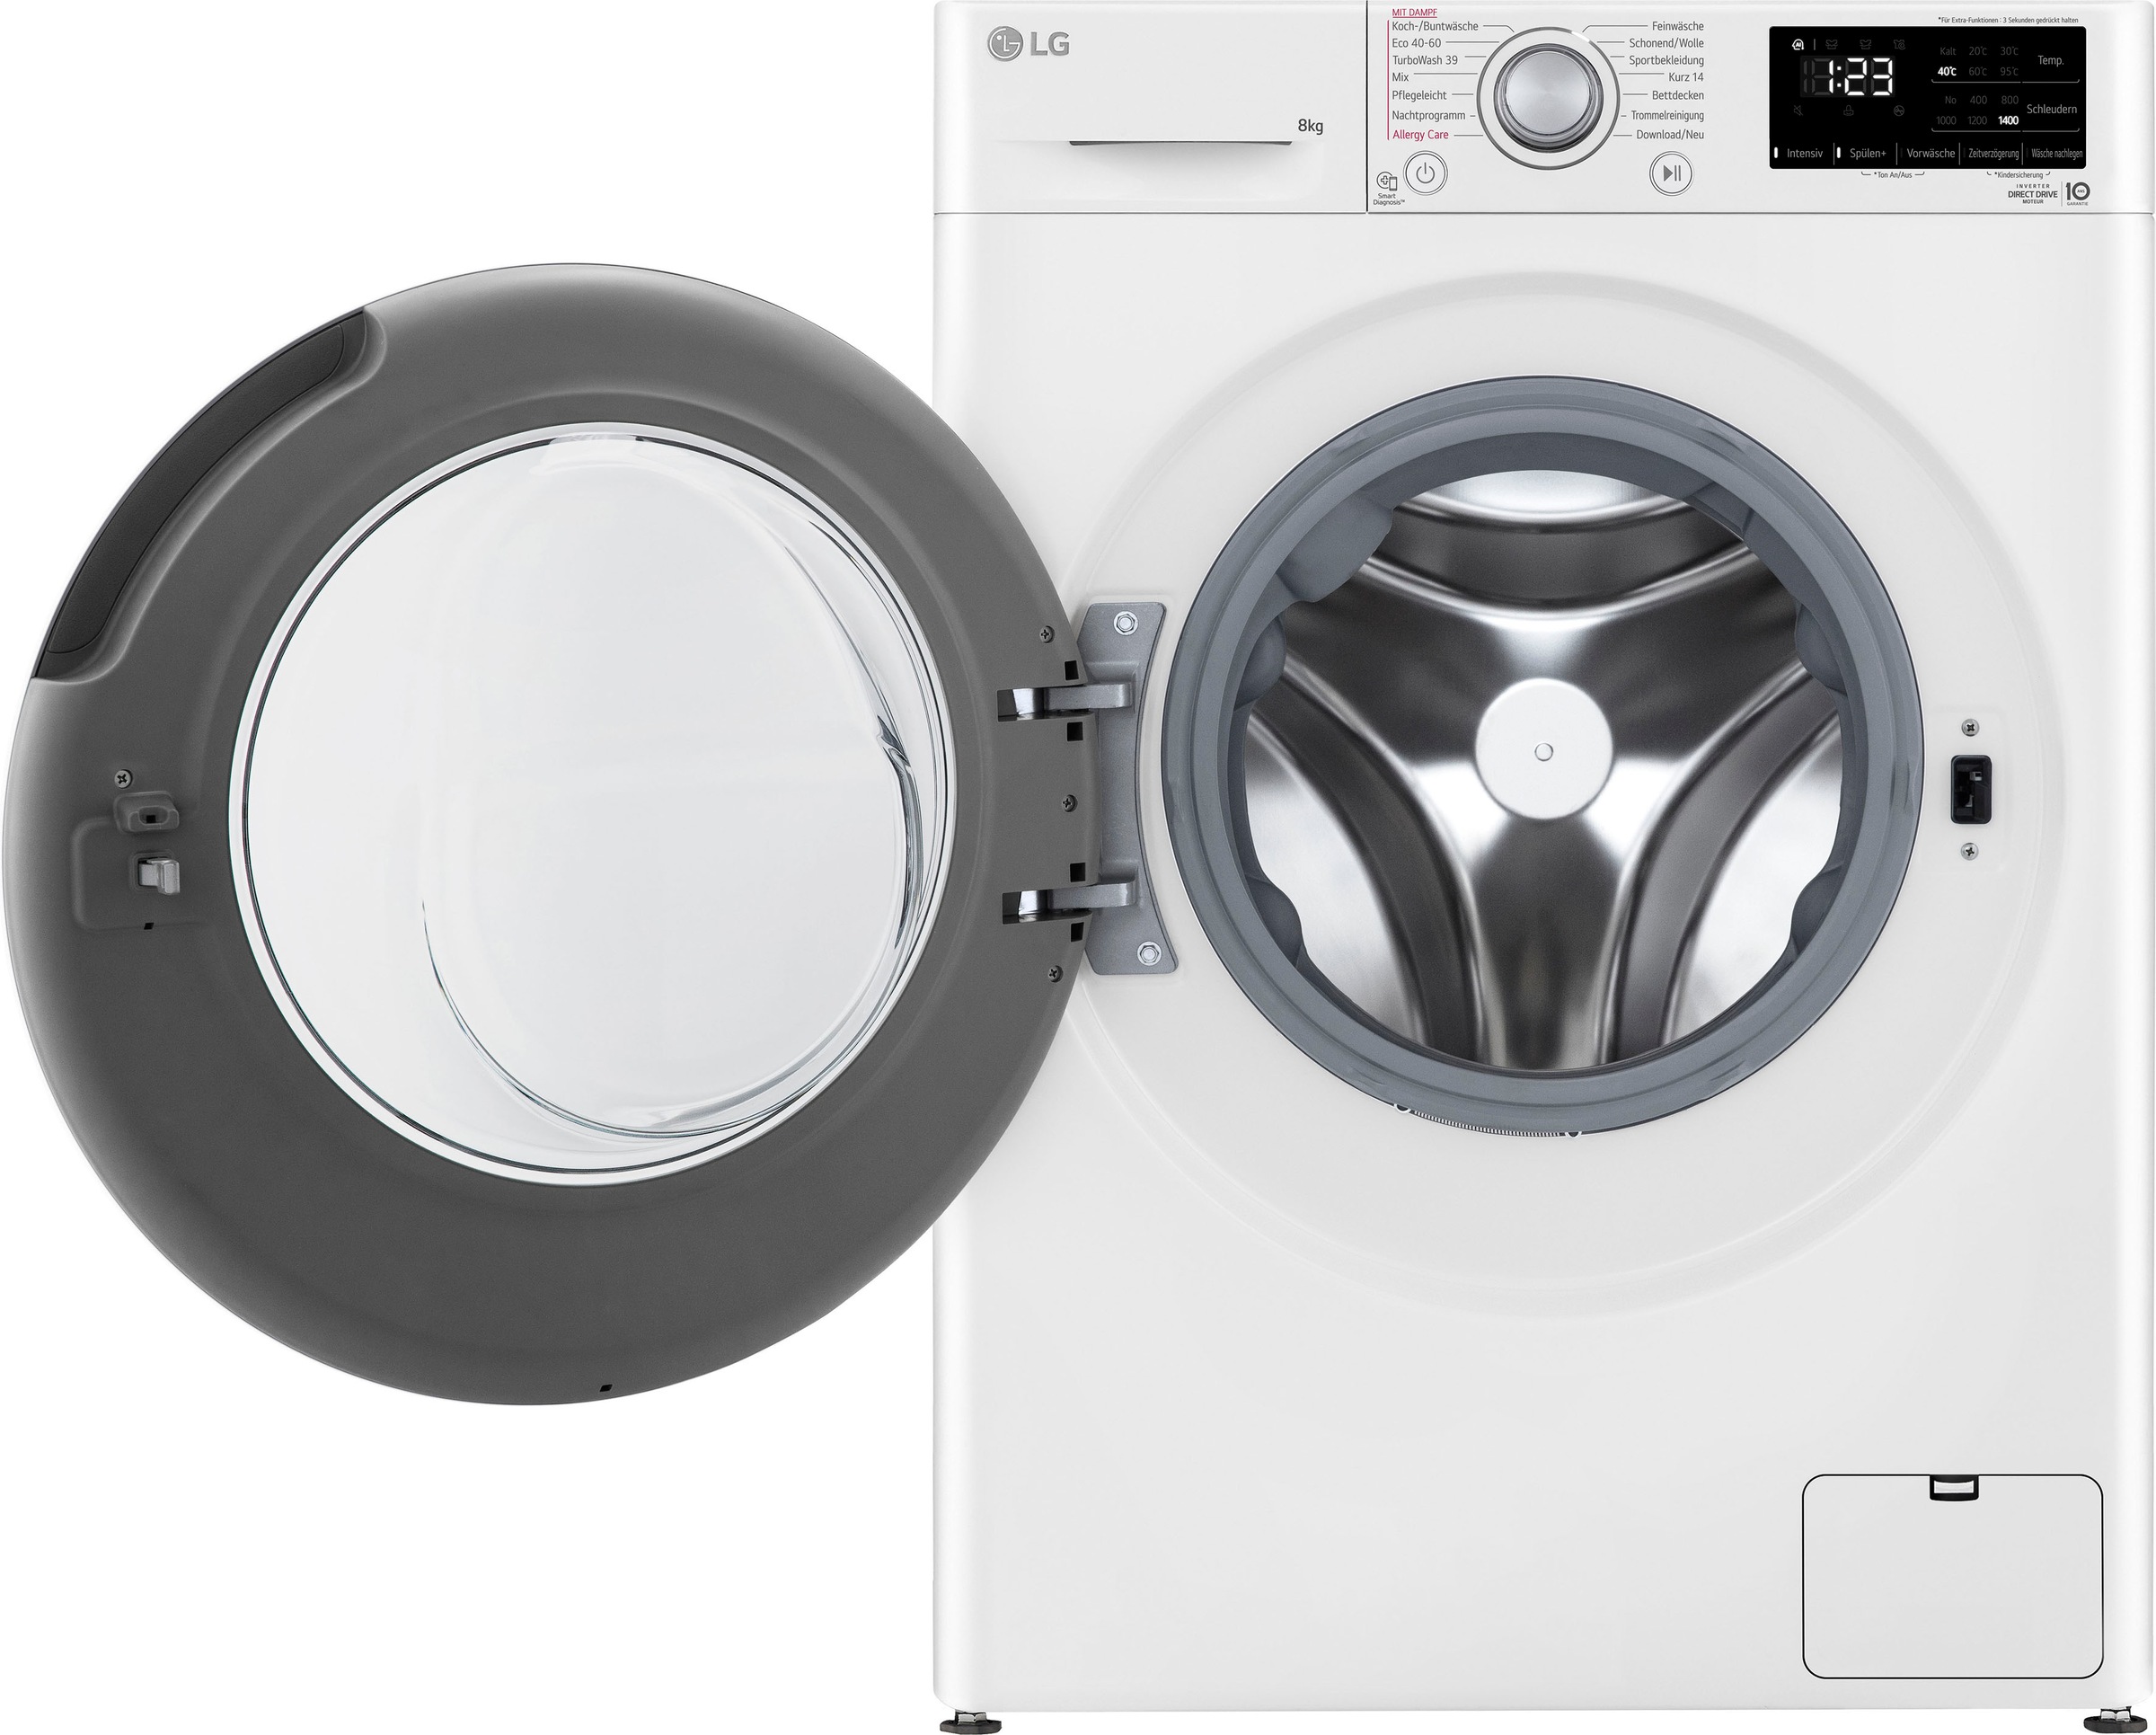 LG Waschmaschine »F4WV3284«, Serie 3, U/min mit 1400 3 Garantie 8 Jahren F4WV3284, XXL kg